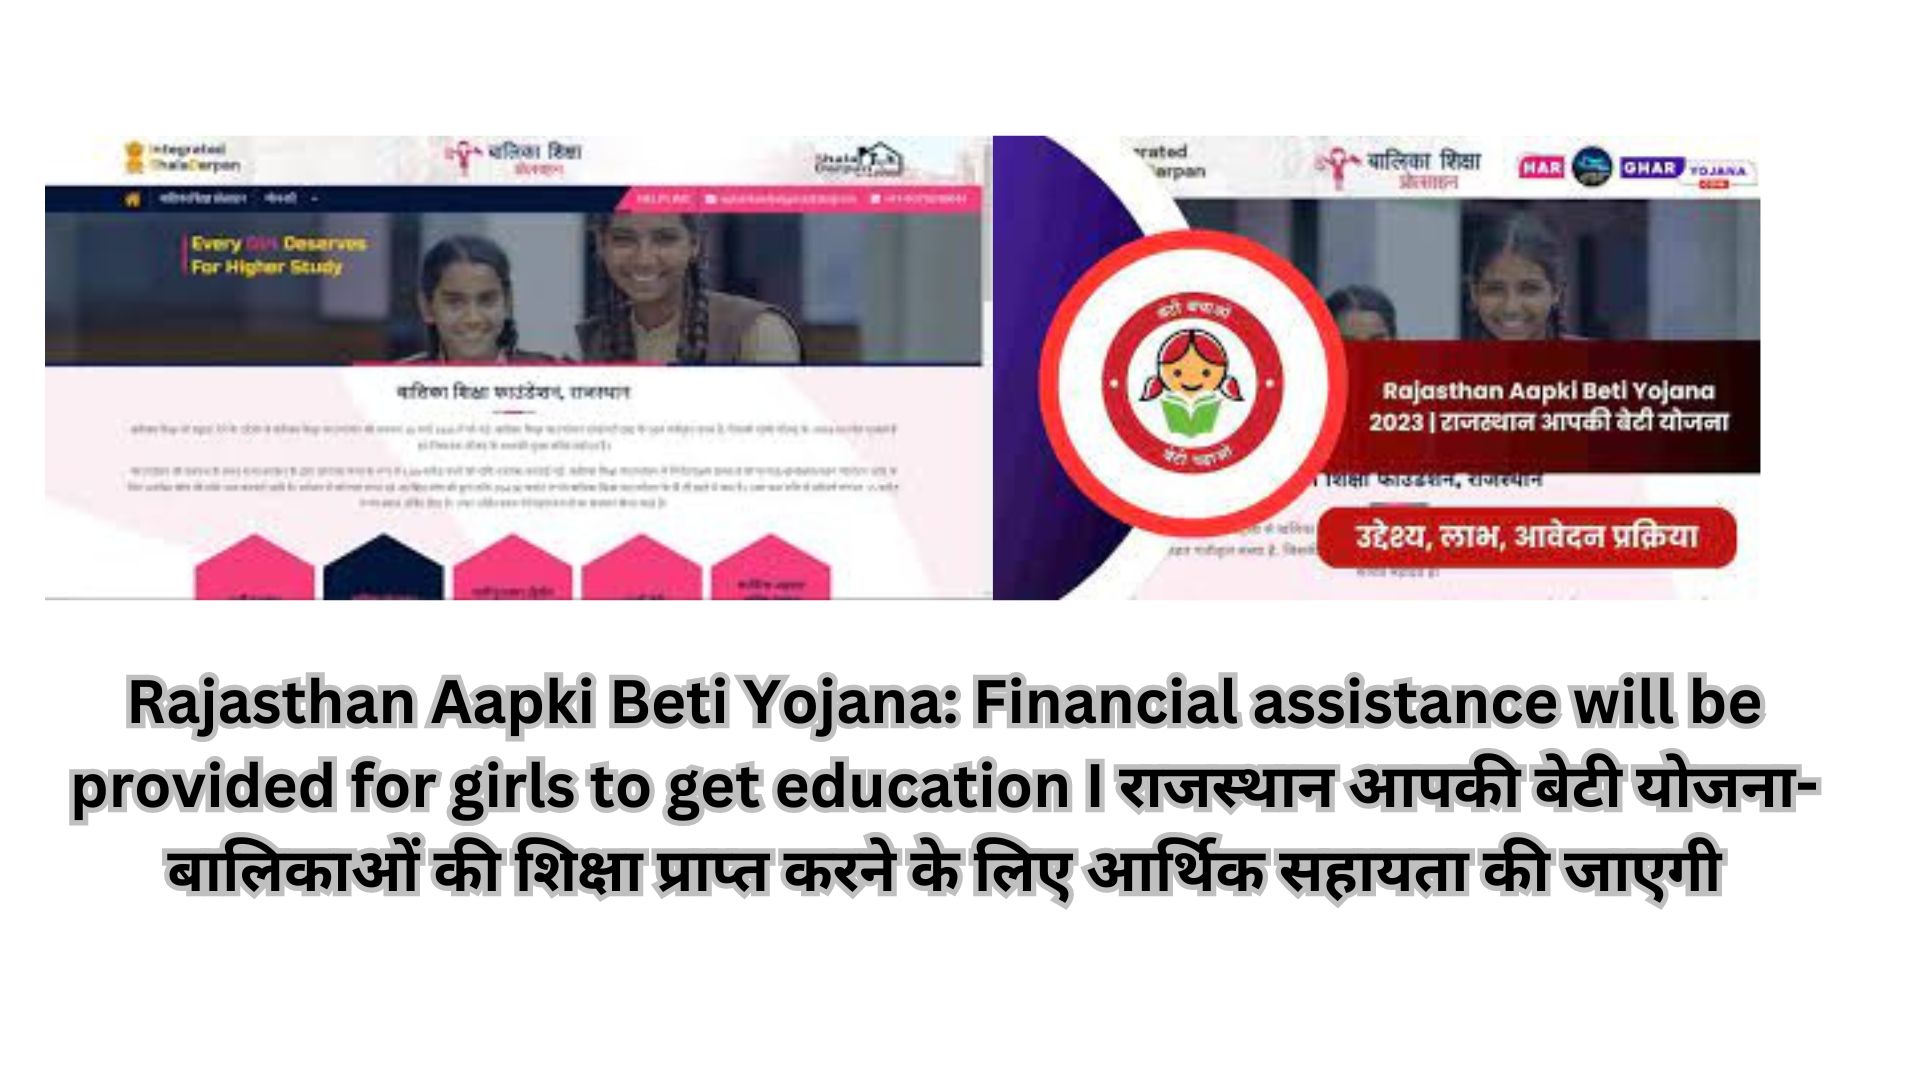 Rajasthan Aapki Beti Yojana: Financial assistance will be provided for girls to get education I राजस्थान आपकी बेटी योजना- बालिकाओं की शिक्षा प्राप्त करने के लिए आर्थिक सहायता की जाएगी